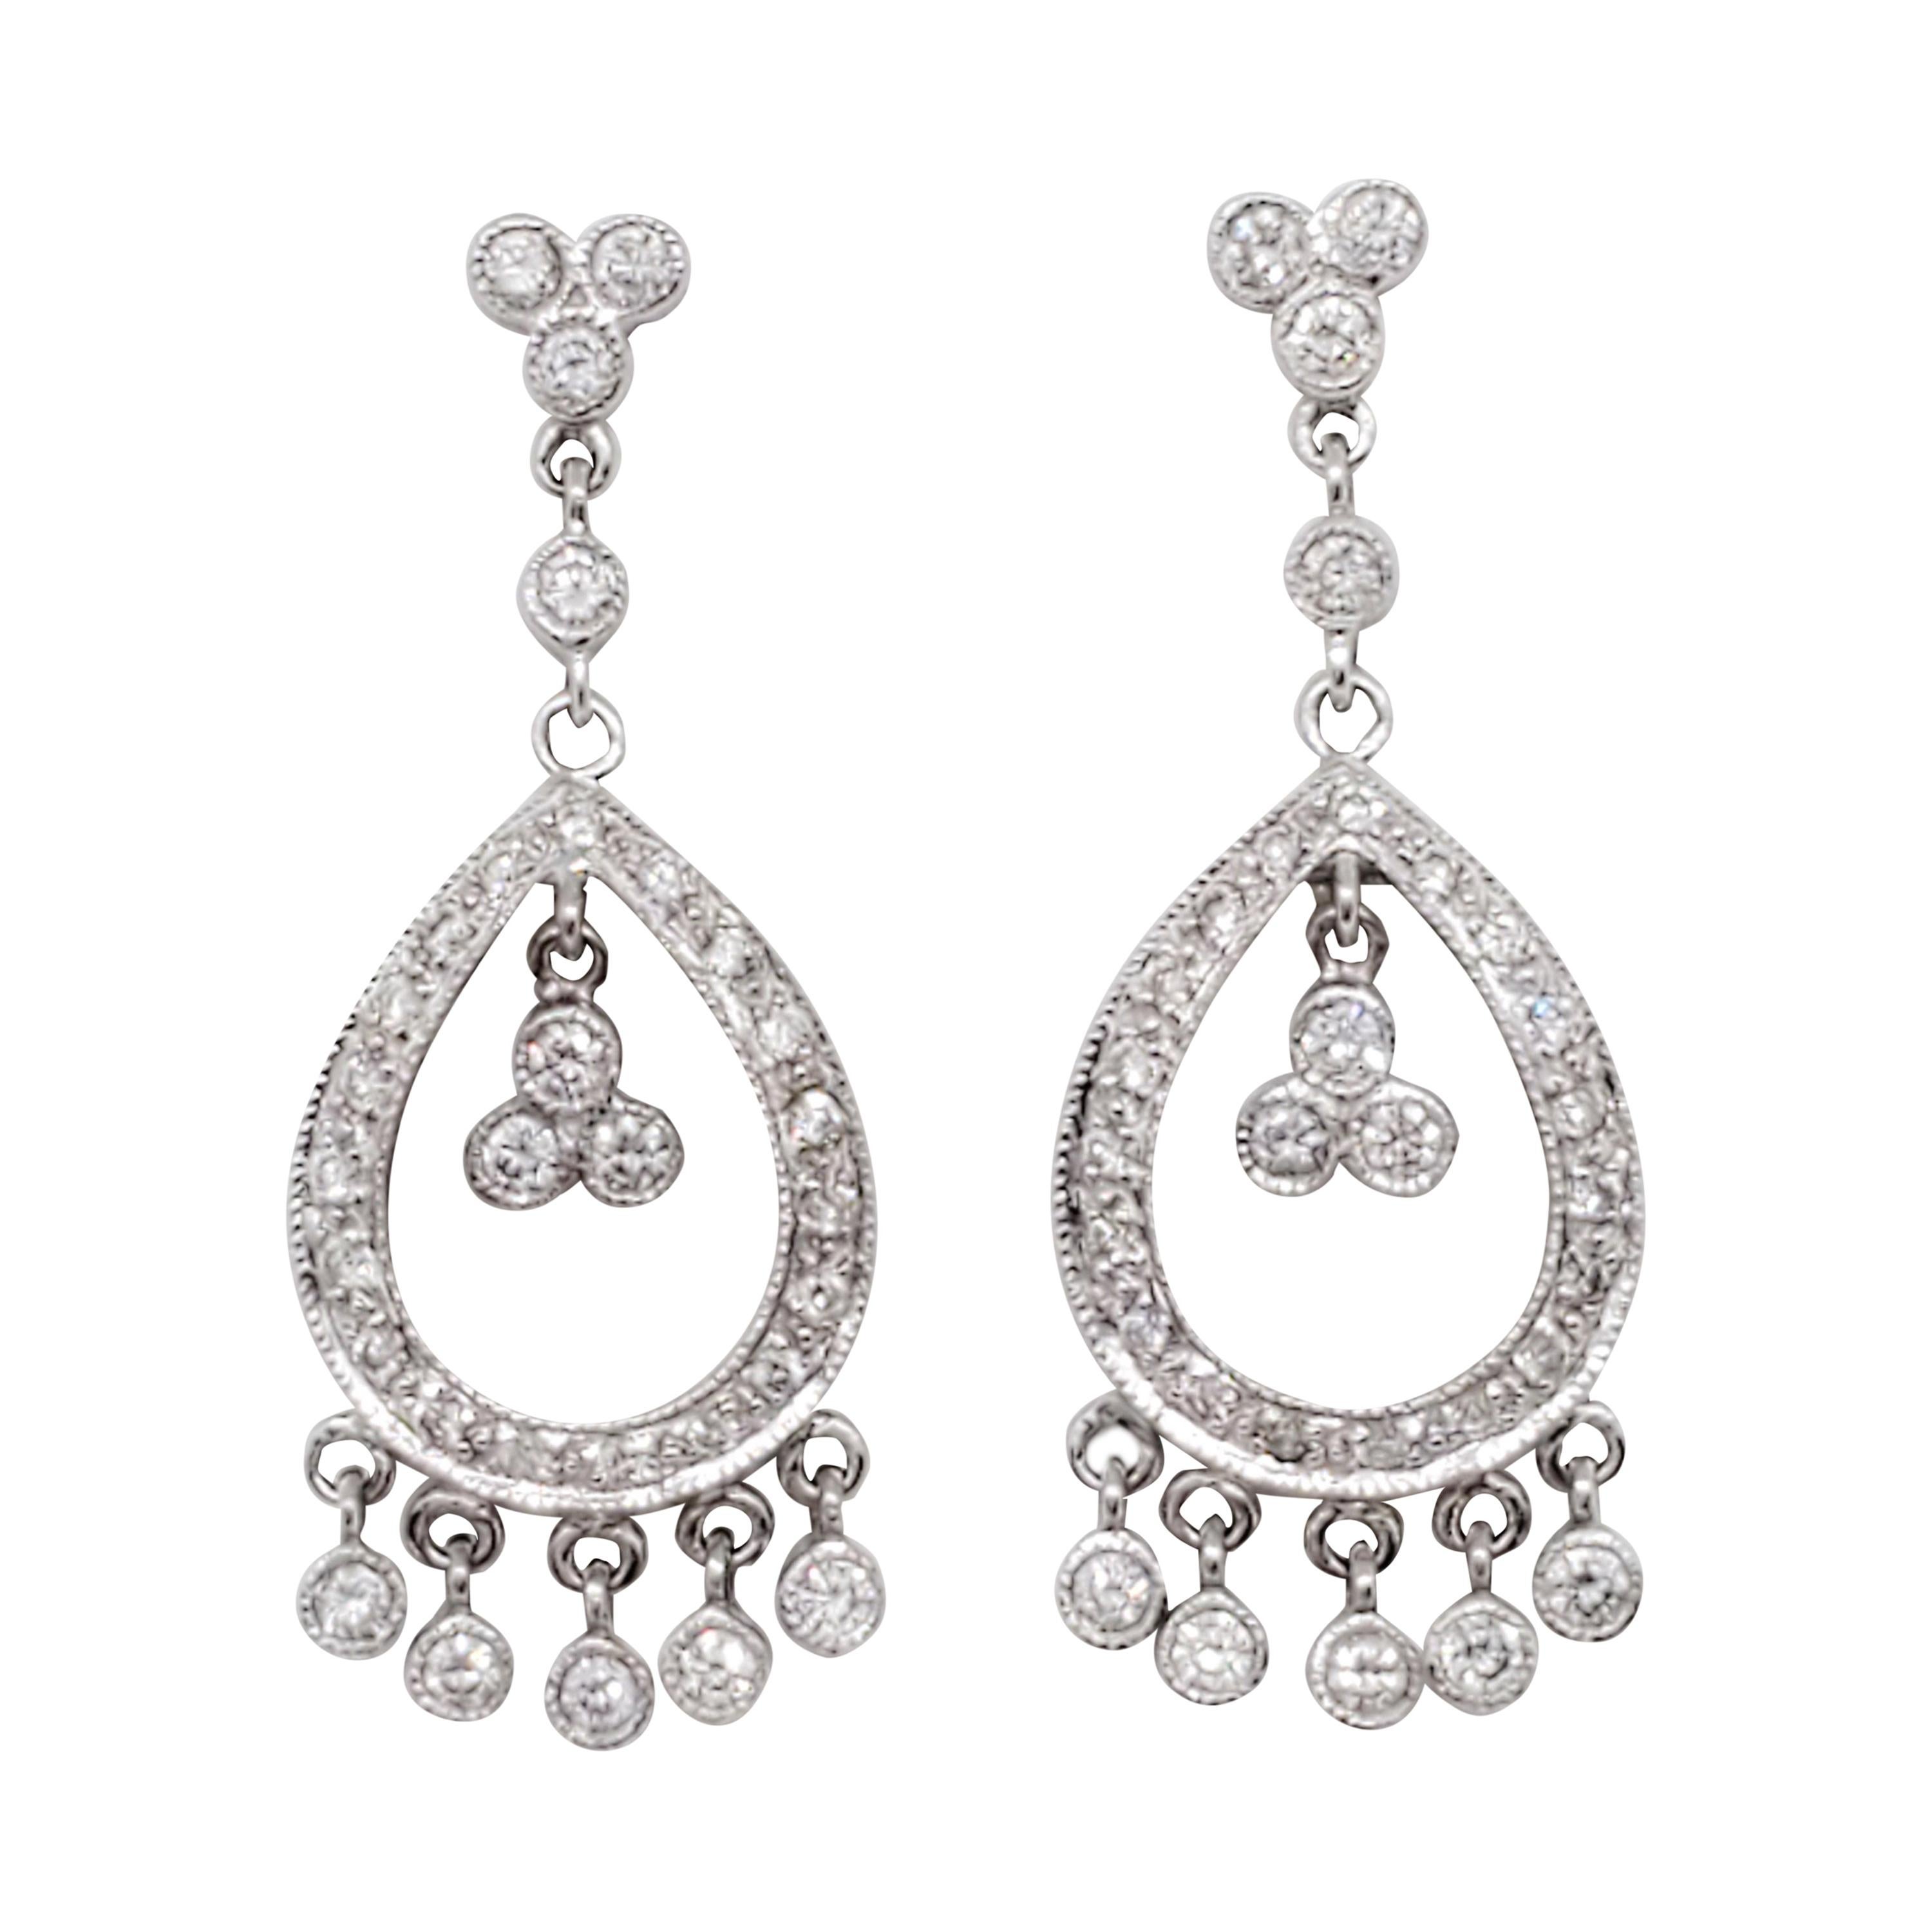 Estate White Diamond Chandelier Earrings in 18k White Gold